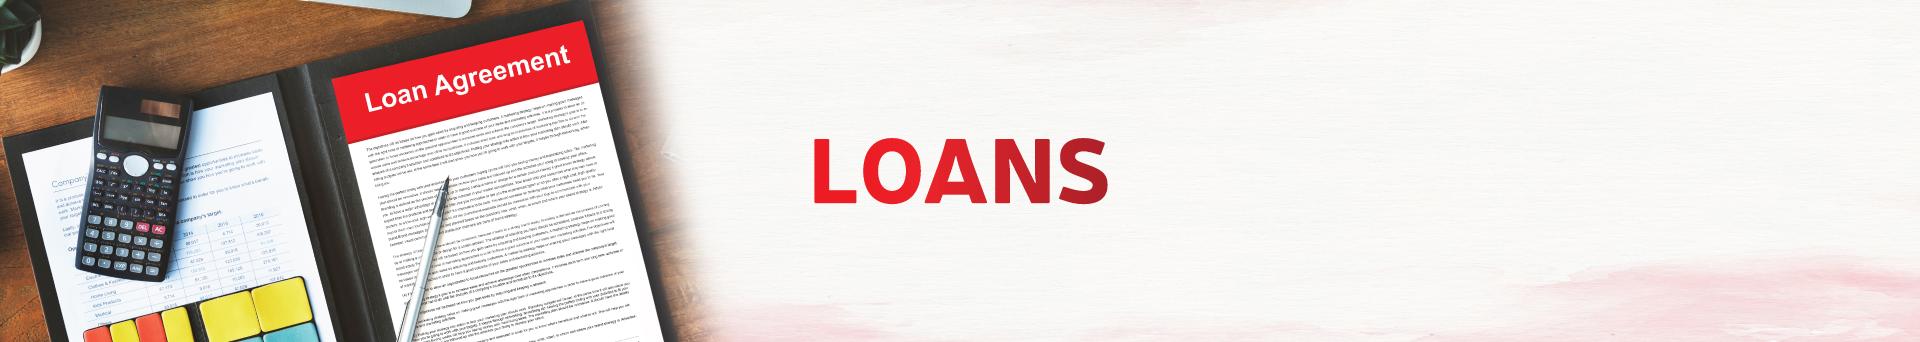 Mshahara loans 